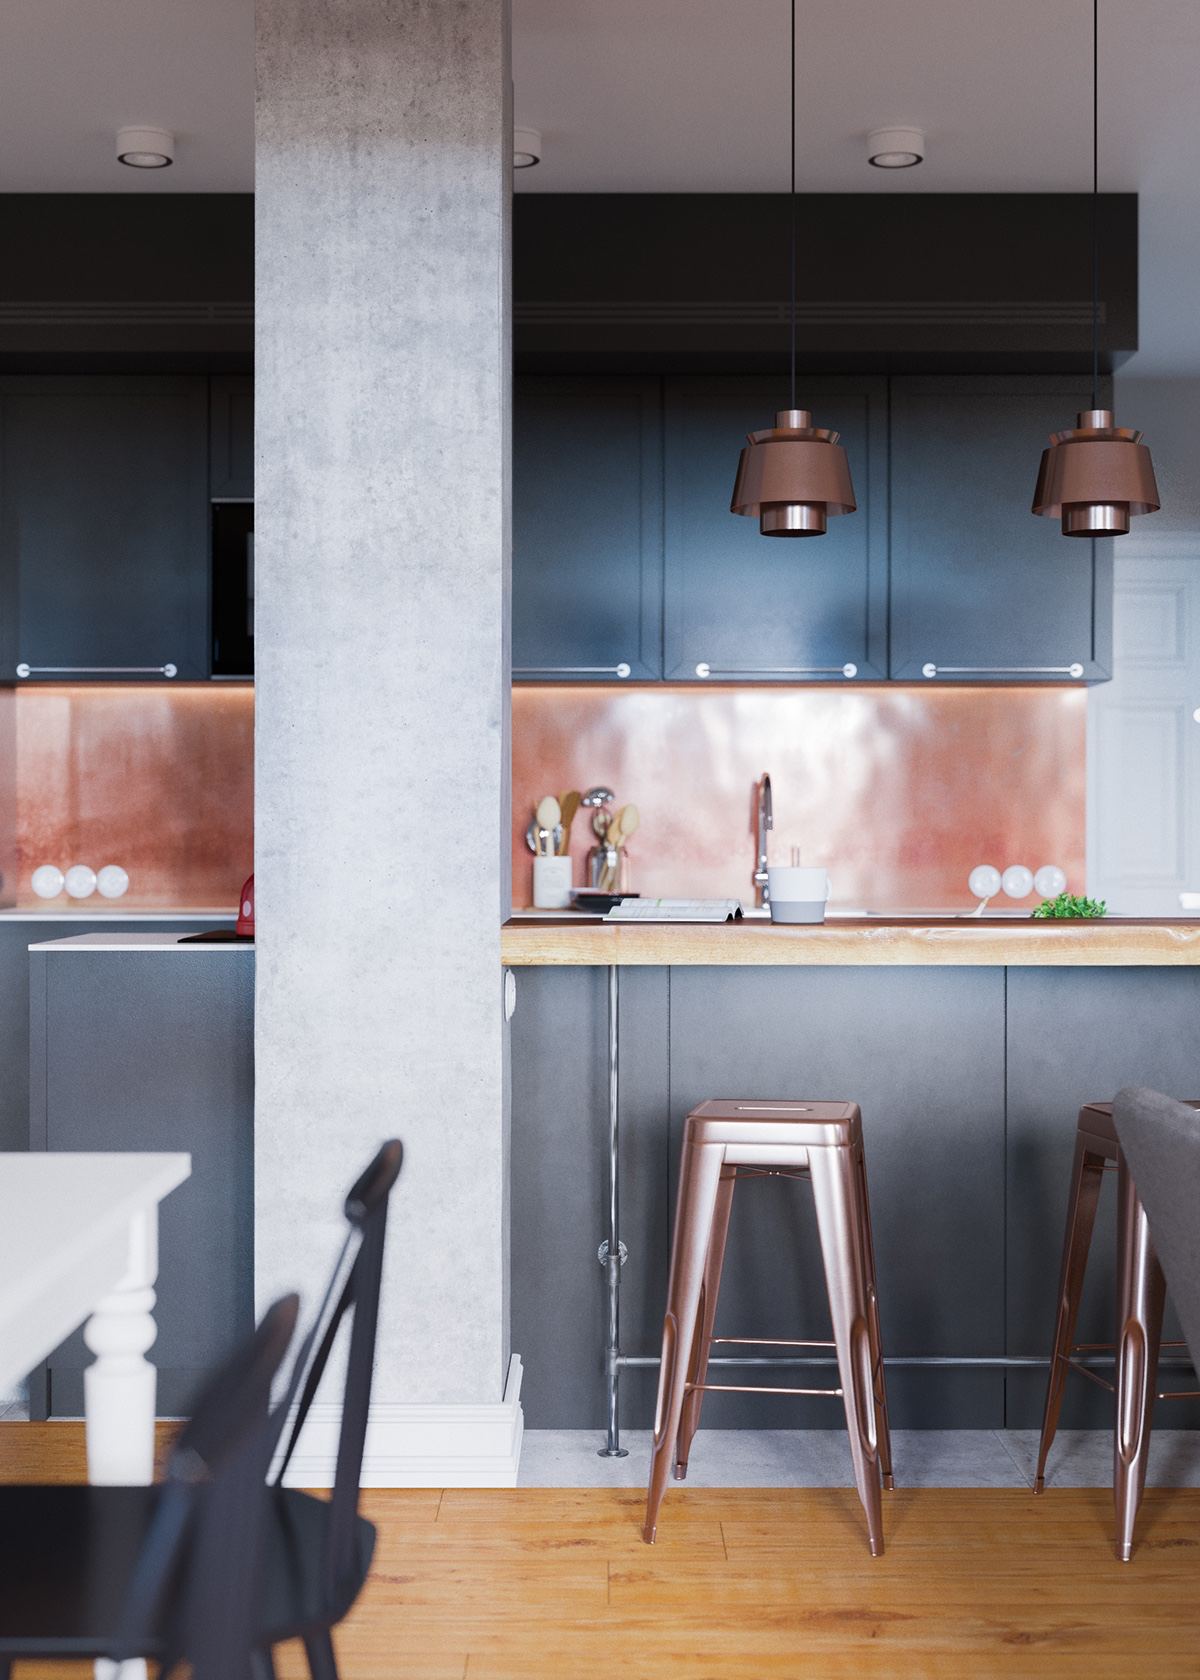 Claves_para_crear_contrastes_de_color_en_la_decoración_espacio_cocina_copper-and-black-kitchen-theme-min